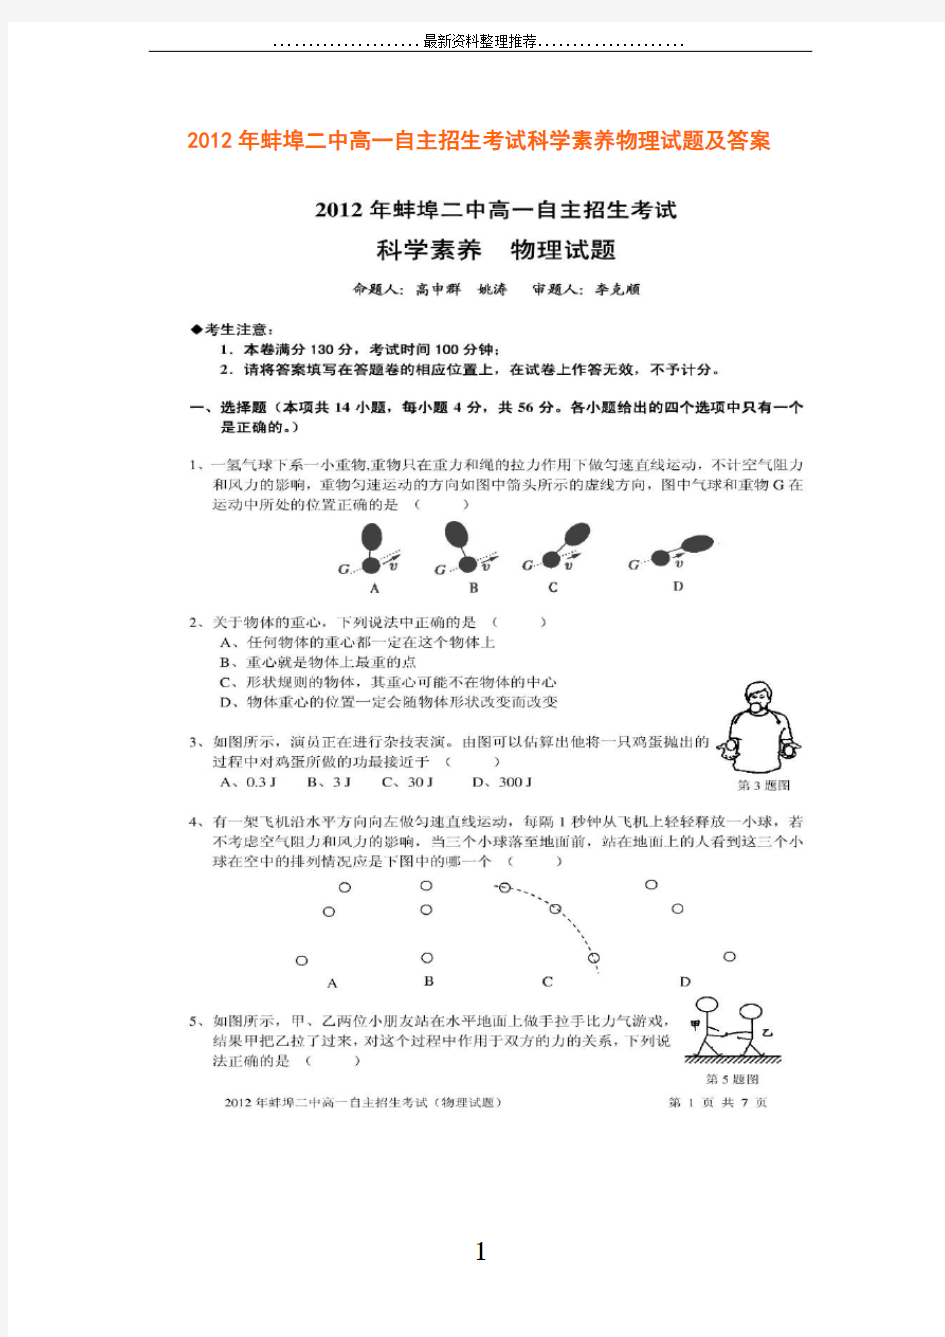 蚌埠二中高一自主招生考试科学素养物理试题及答案(扫描版)